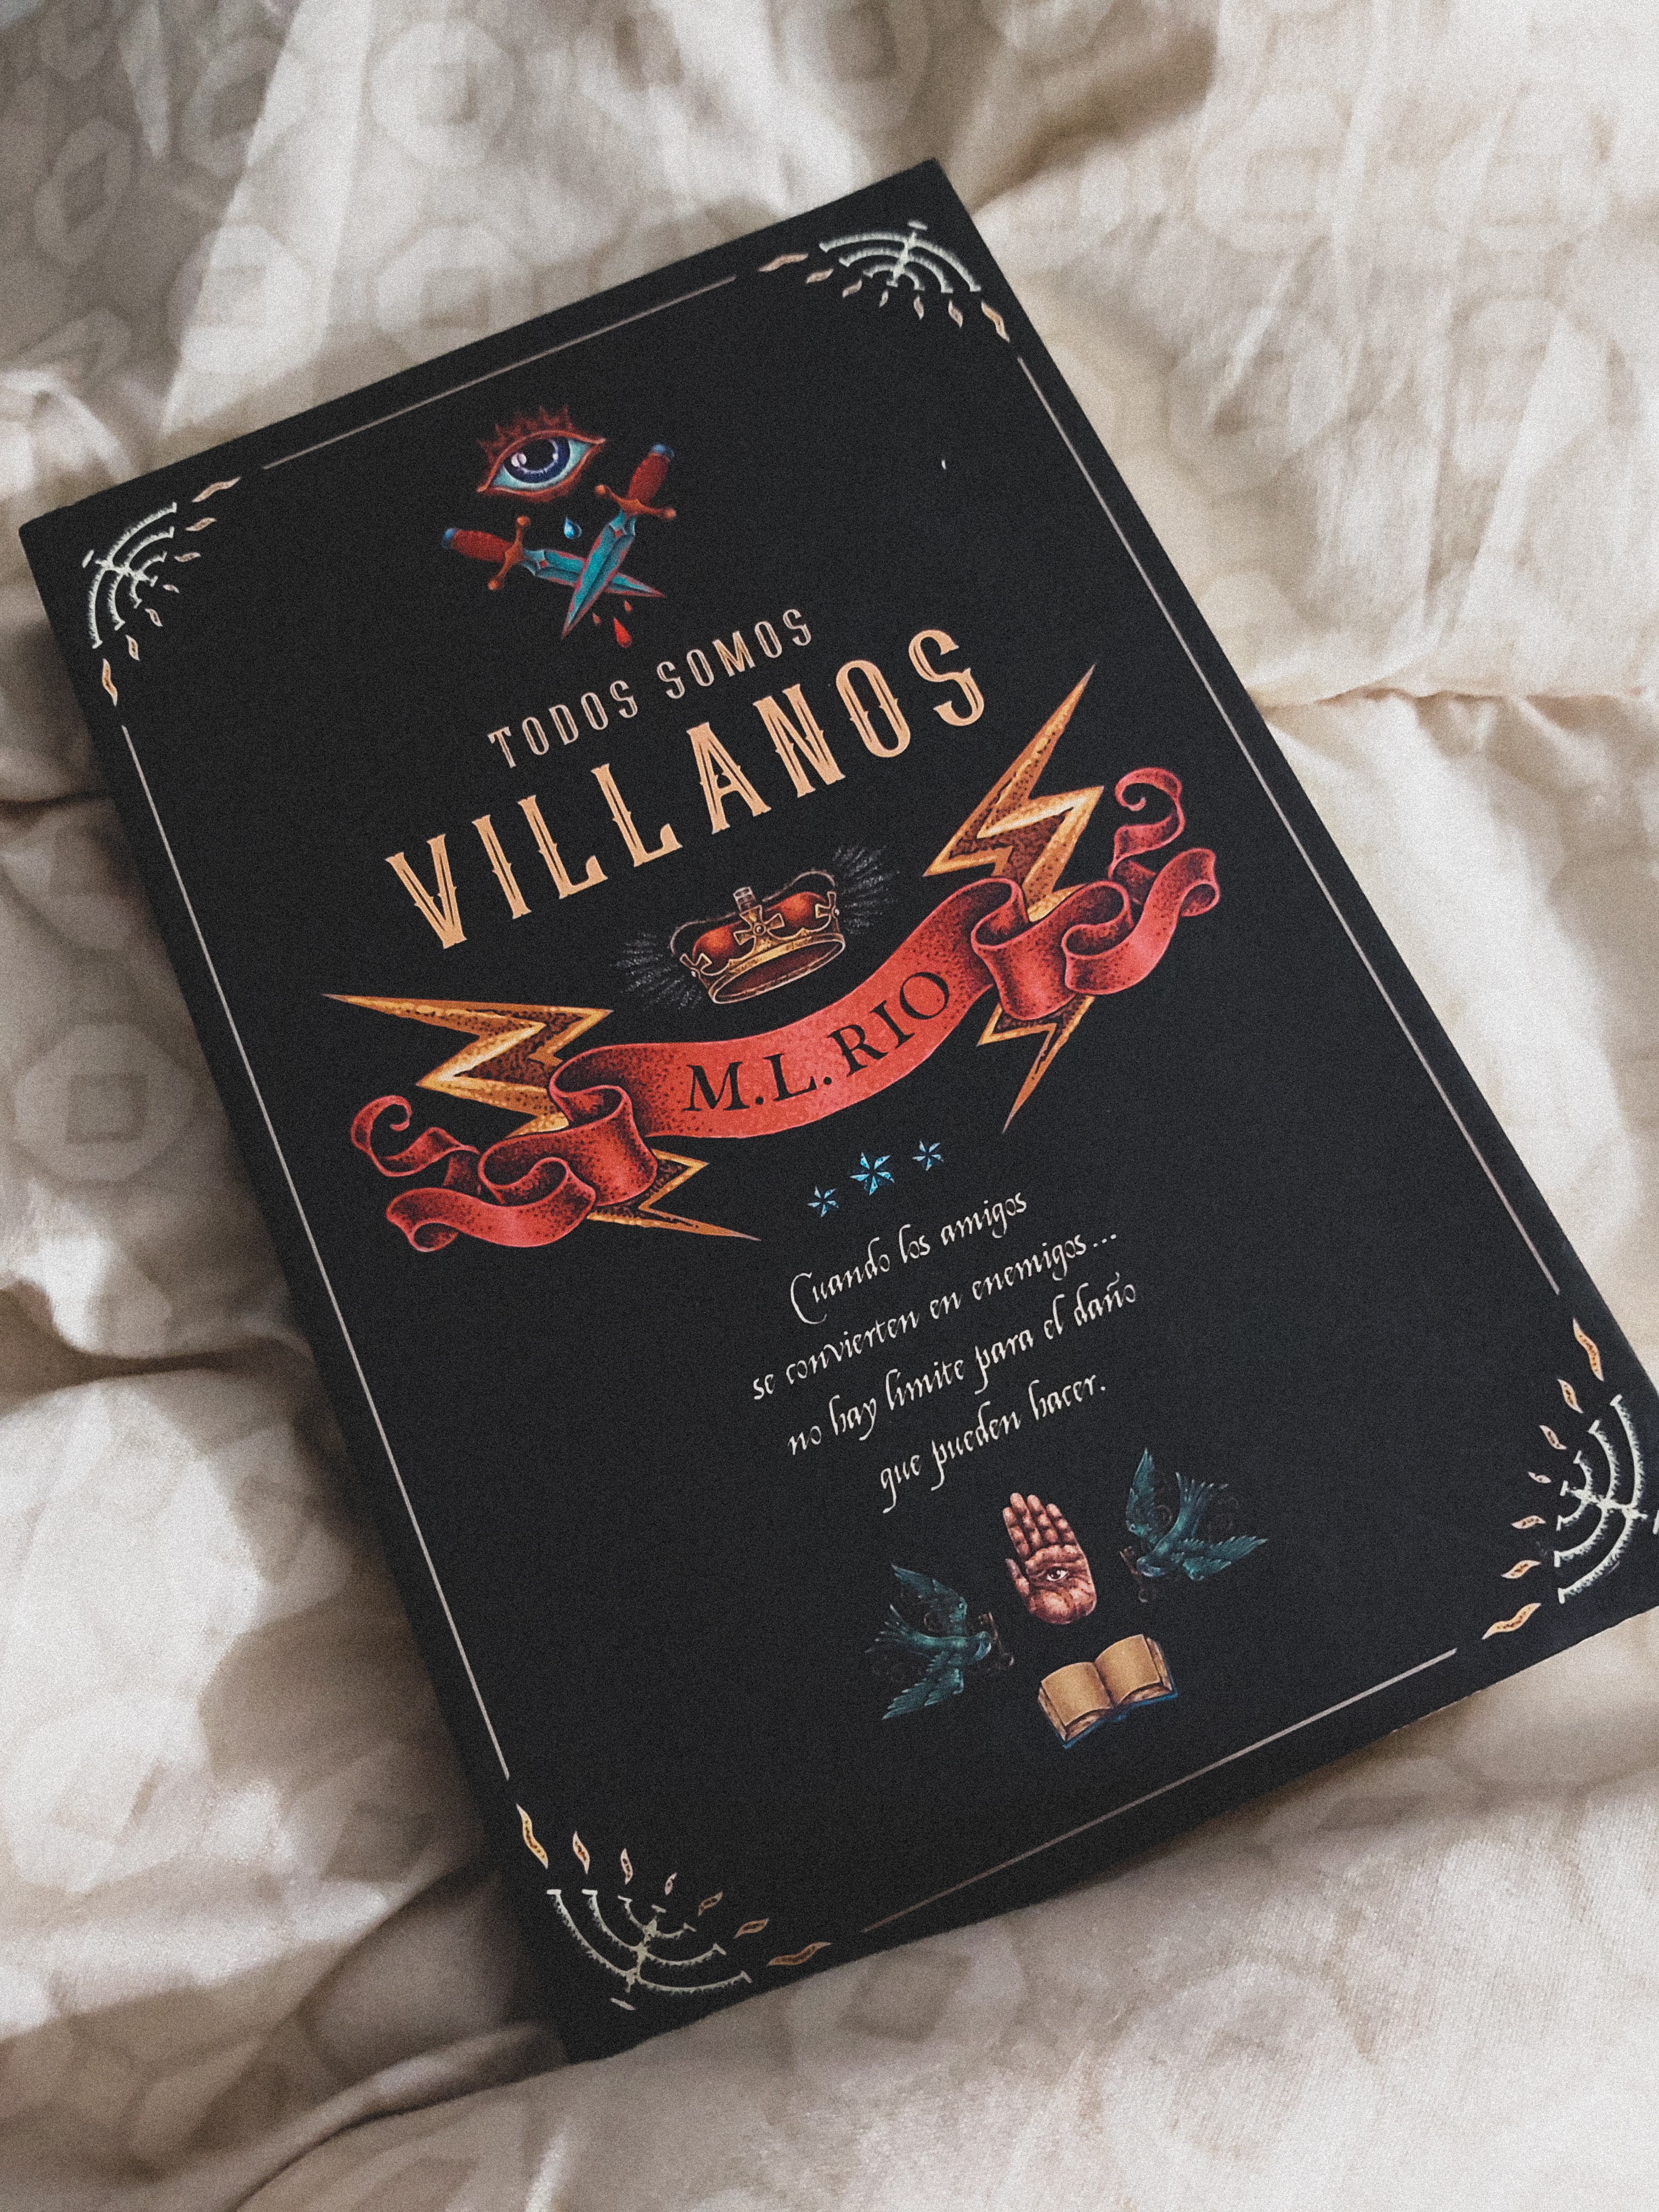 Reseña de Todos somos villanos de M.L. Rio – Jardines de papel